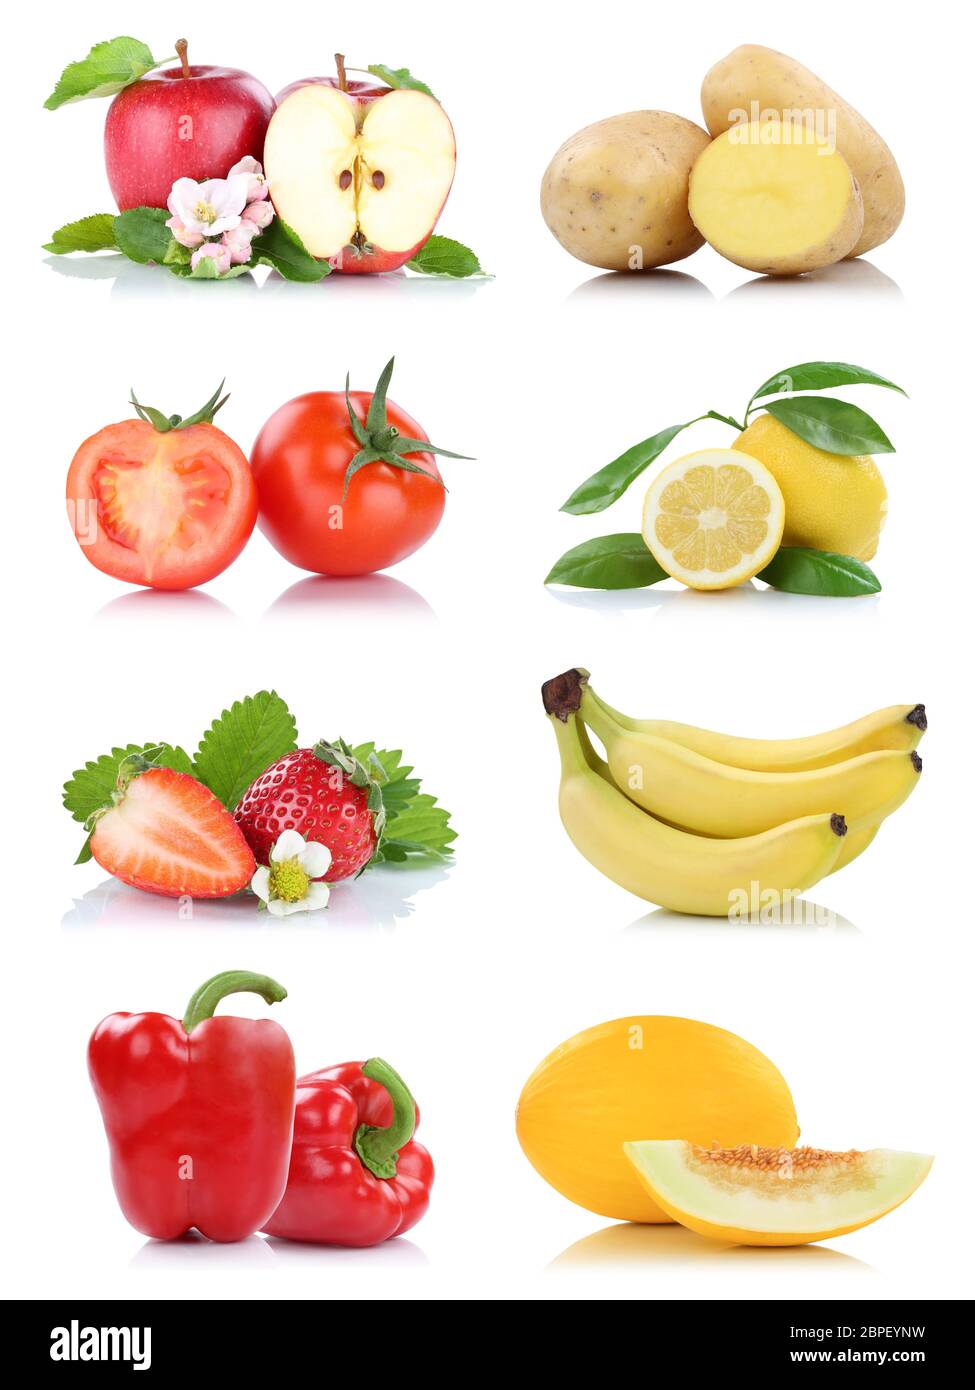 Obst und Gemüse Früchte viele Apfel Tomaten Limone paprica Farben Freisteller freigestellt isoliert vor einem weissen Hintergrund Foto Stock